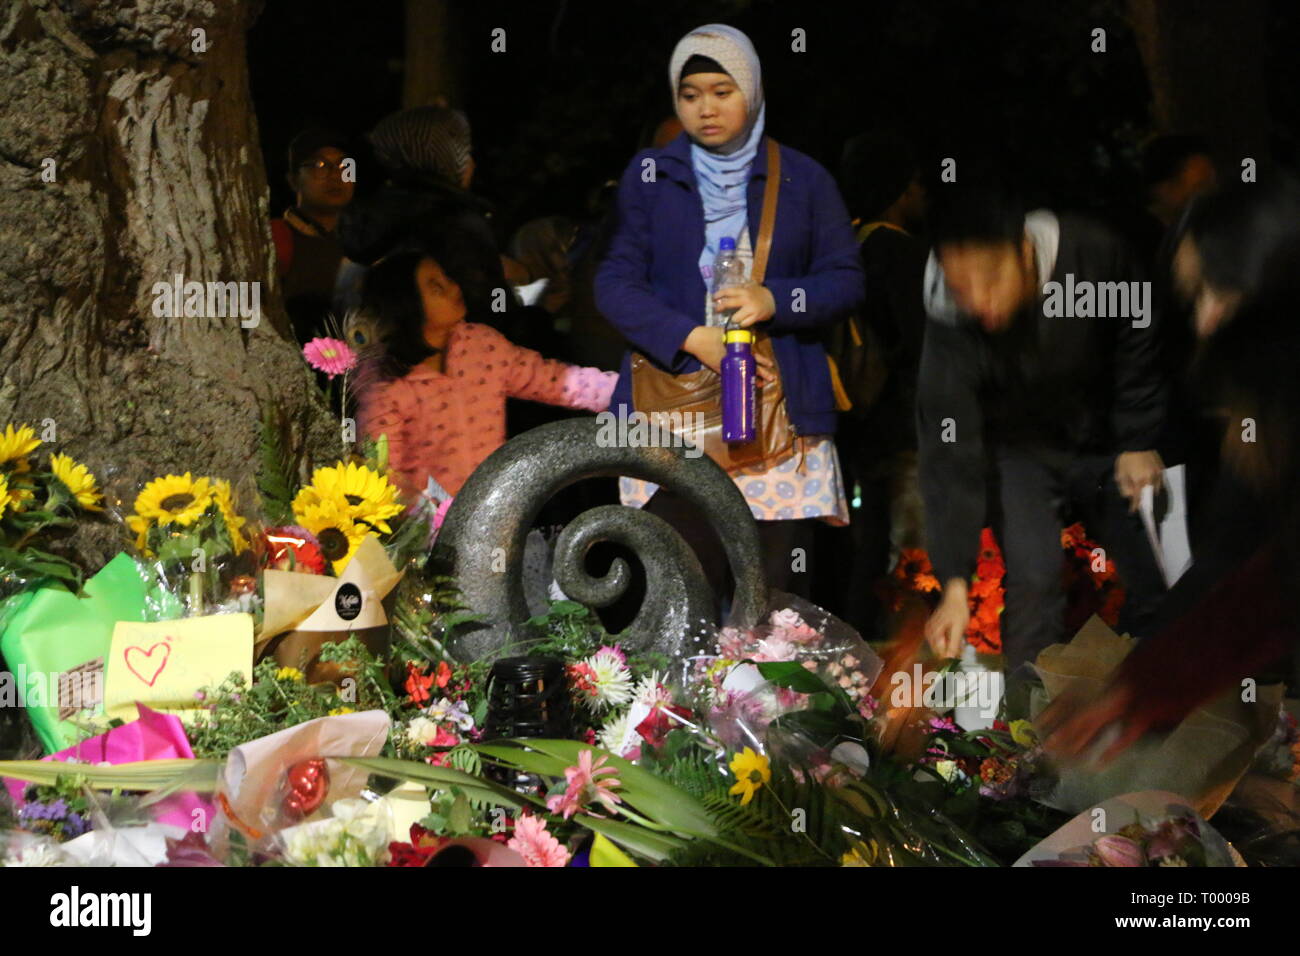 Les membres de la communauté indonésienne vu rendant hommage aux victimes de la prise de vue des mosquées de Christchurch. Autour de 49 personnes a été auraient été tués dans l'attaque terroriste des mosquées de Christchurch ciblant la prise de la mosquée Al Noor Mosquée et la mosquée de Linwood. Banque D'Images